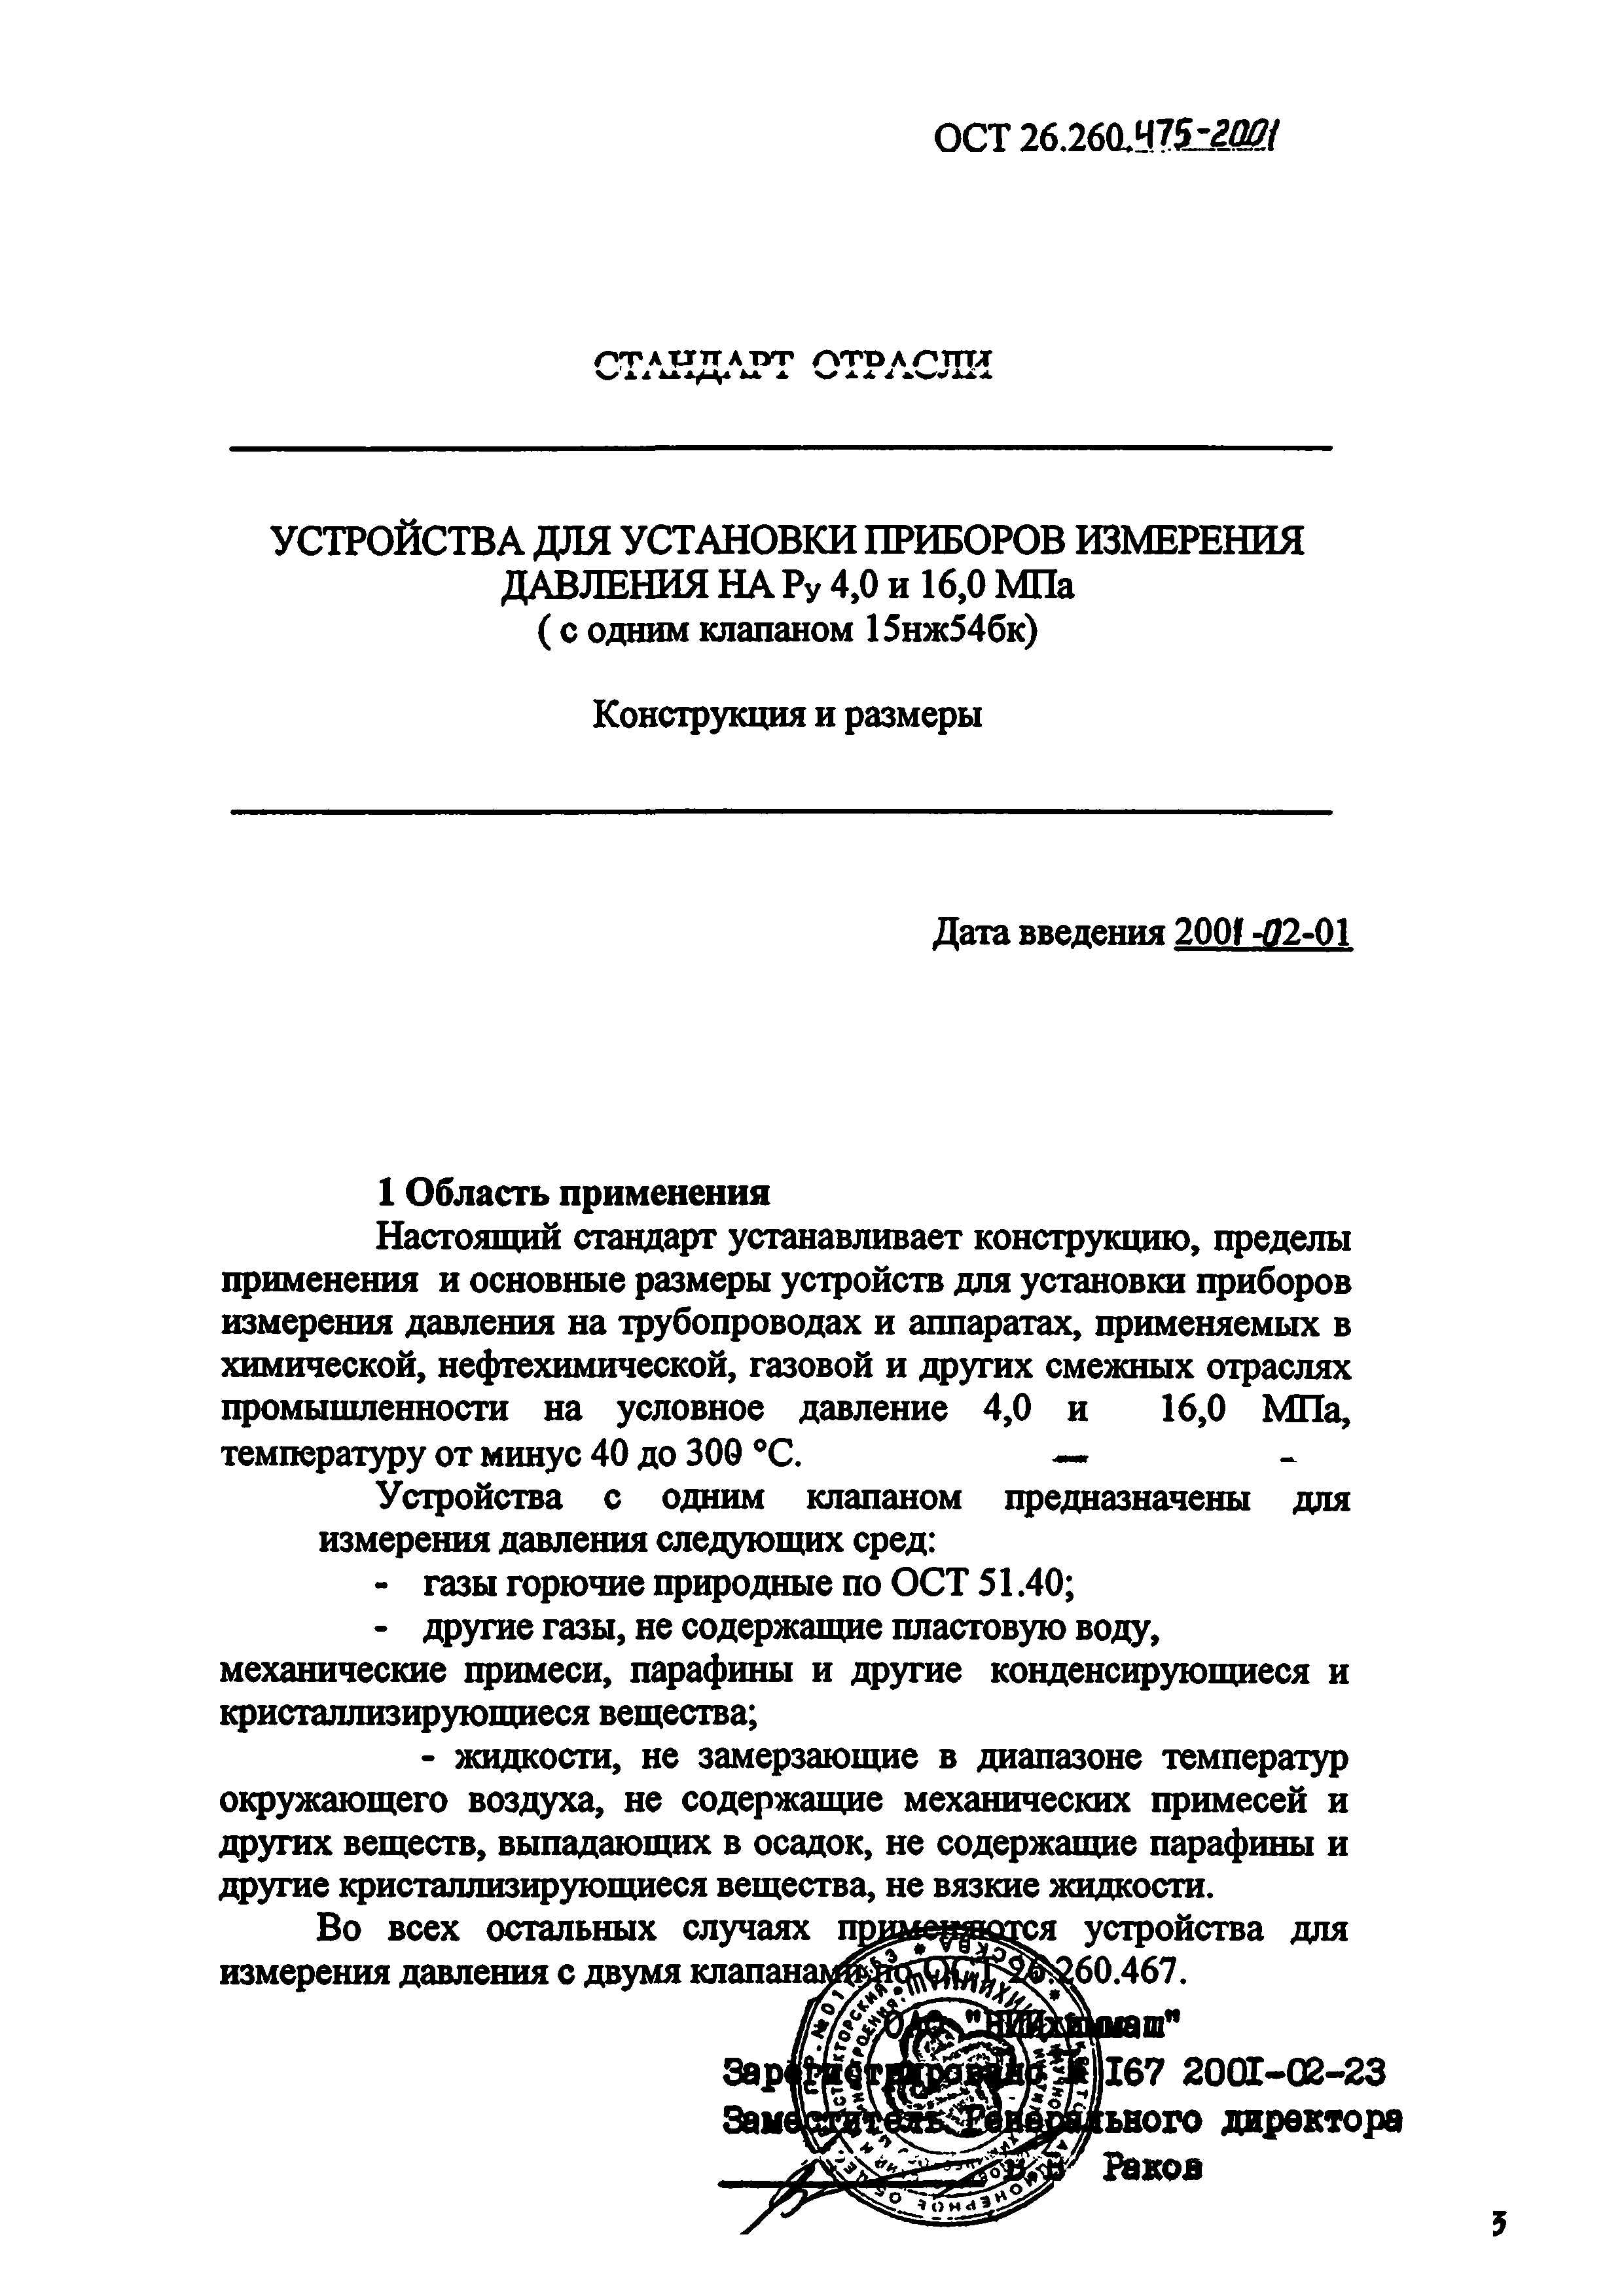 ОСТ 26.260.475-2001